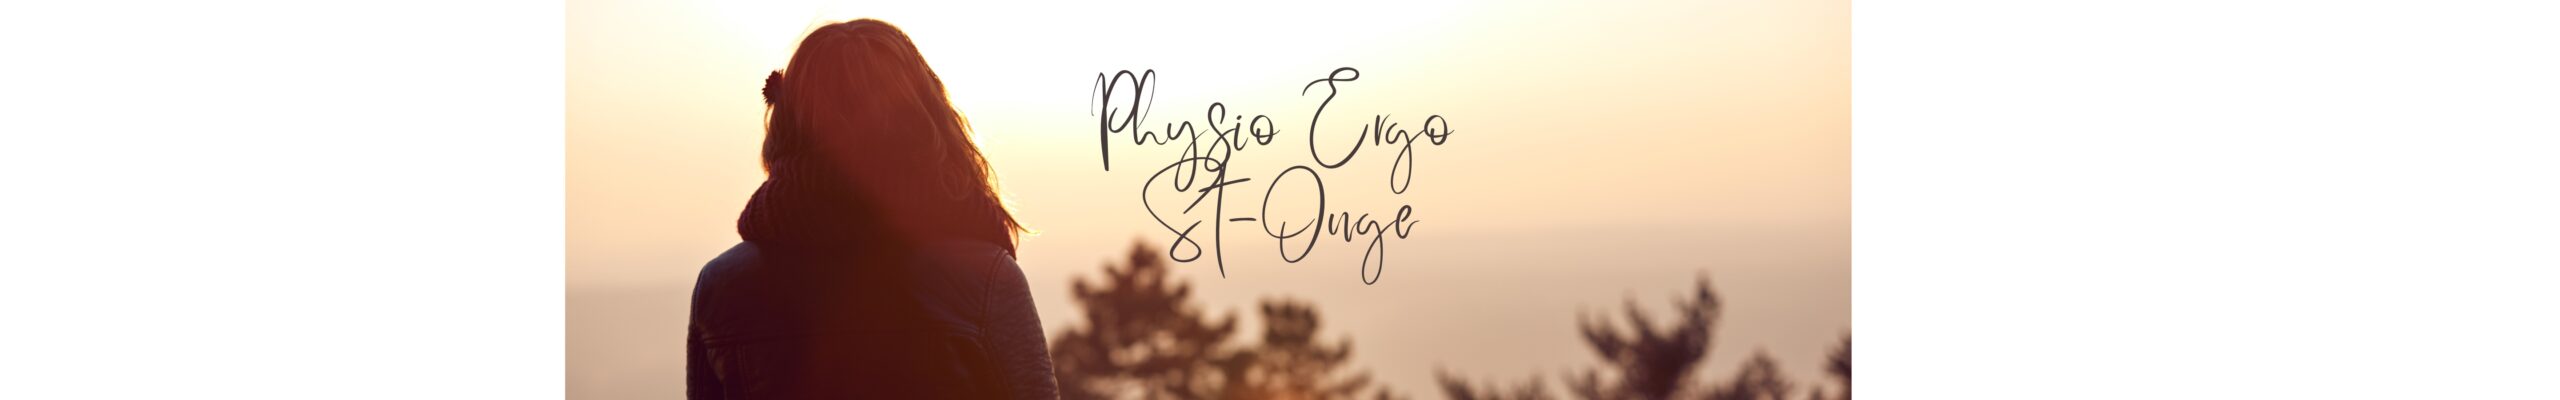 Physio Ergo St-Onge